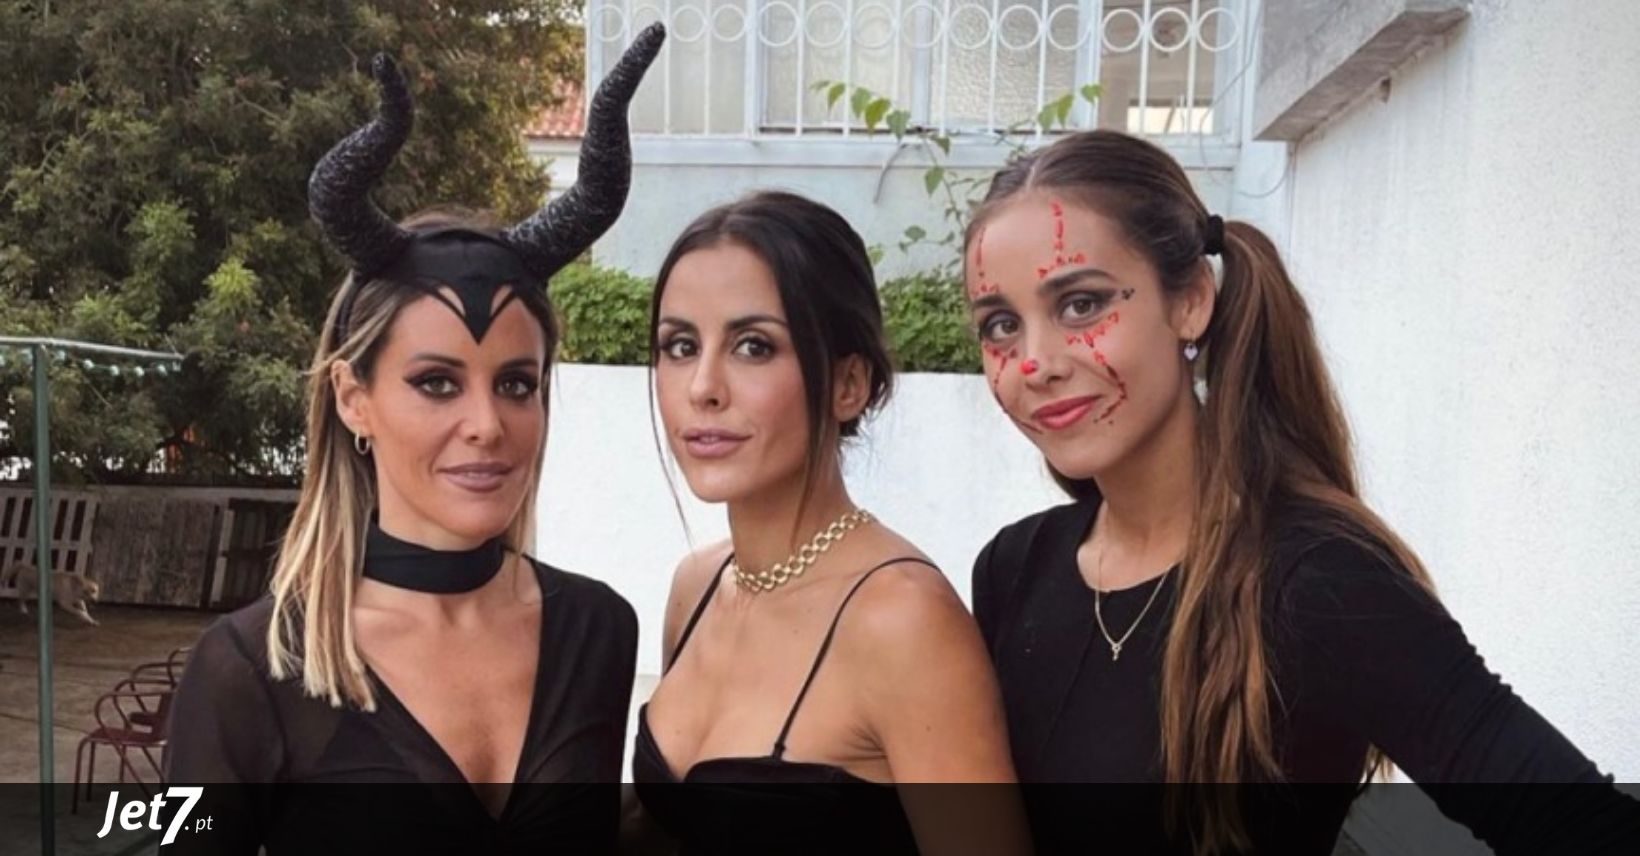 FOTOS: Carolina Patrocínio e as irmãs organizam festa privada de Halloween  - Jet7